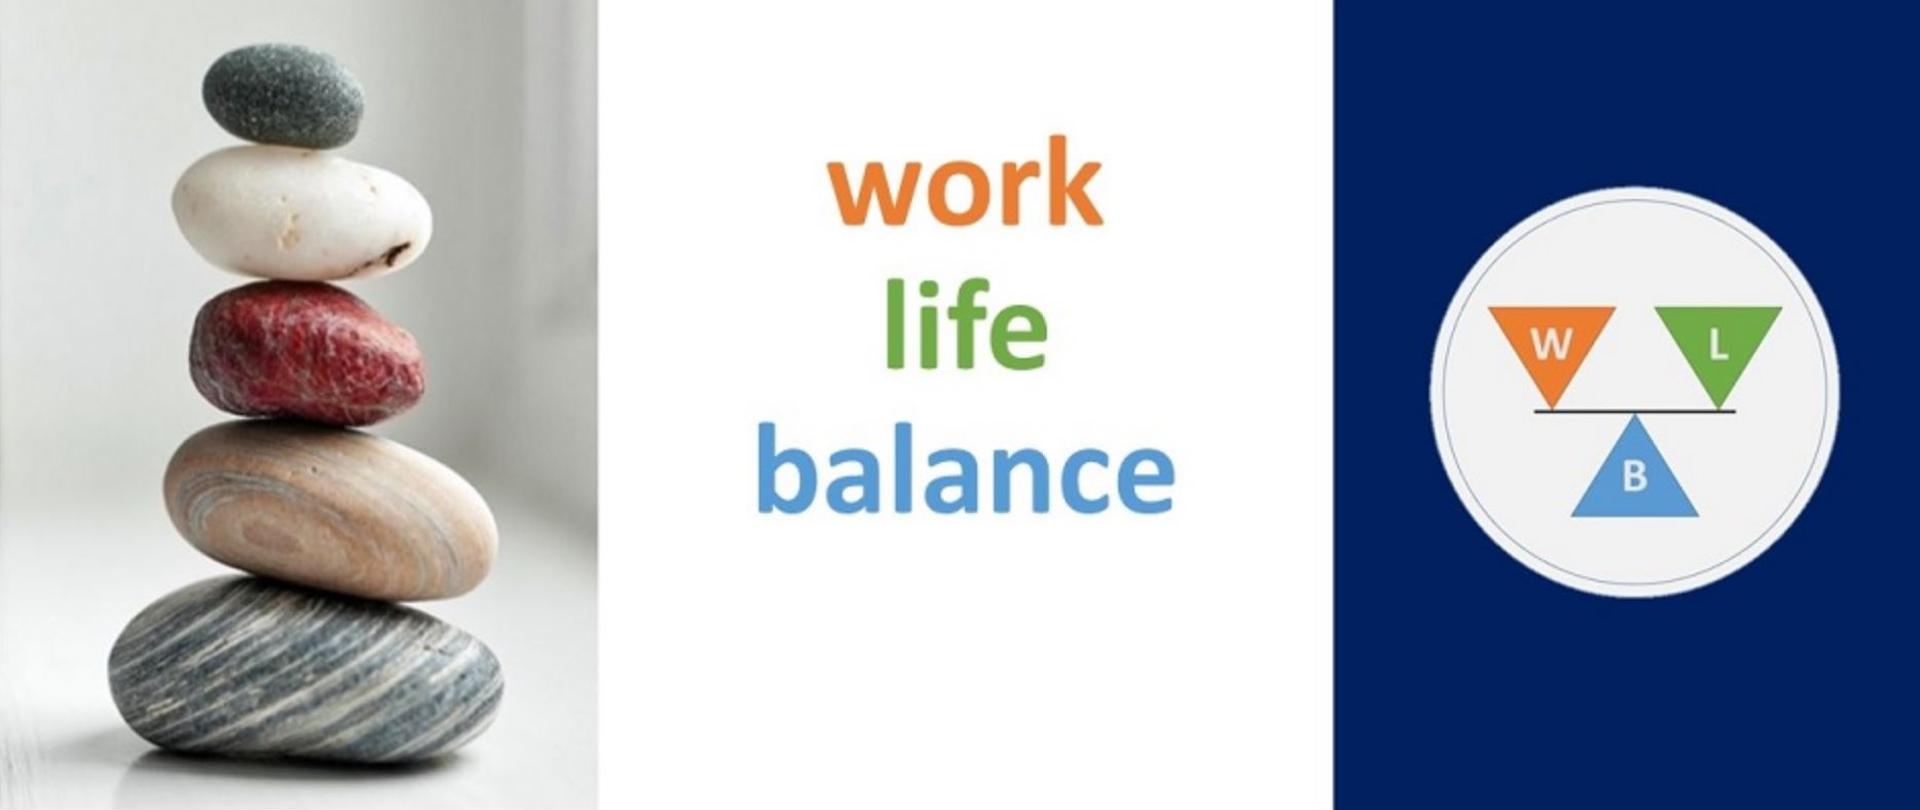 Poukładane kamienie w kształt wieży, napis "work life balance" oraz logo WLB